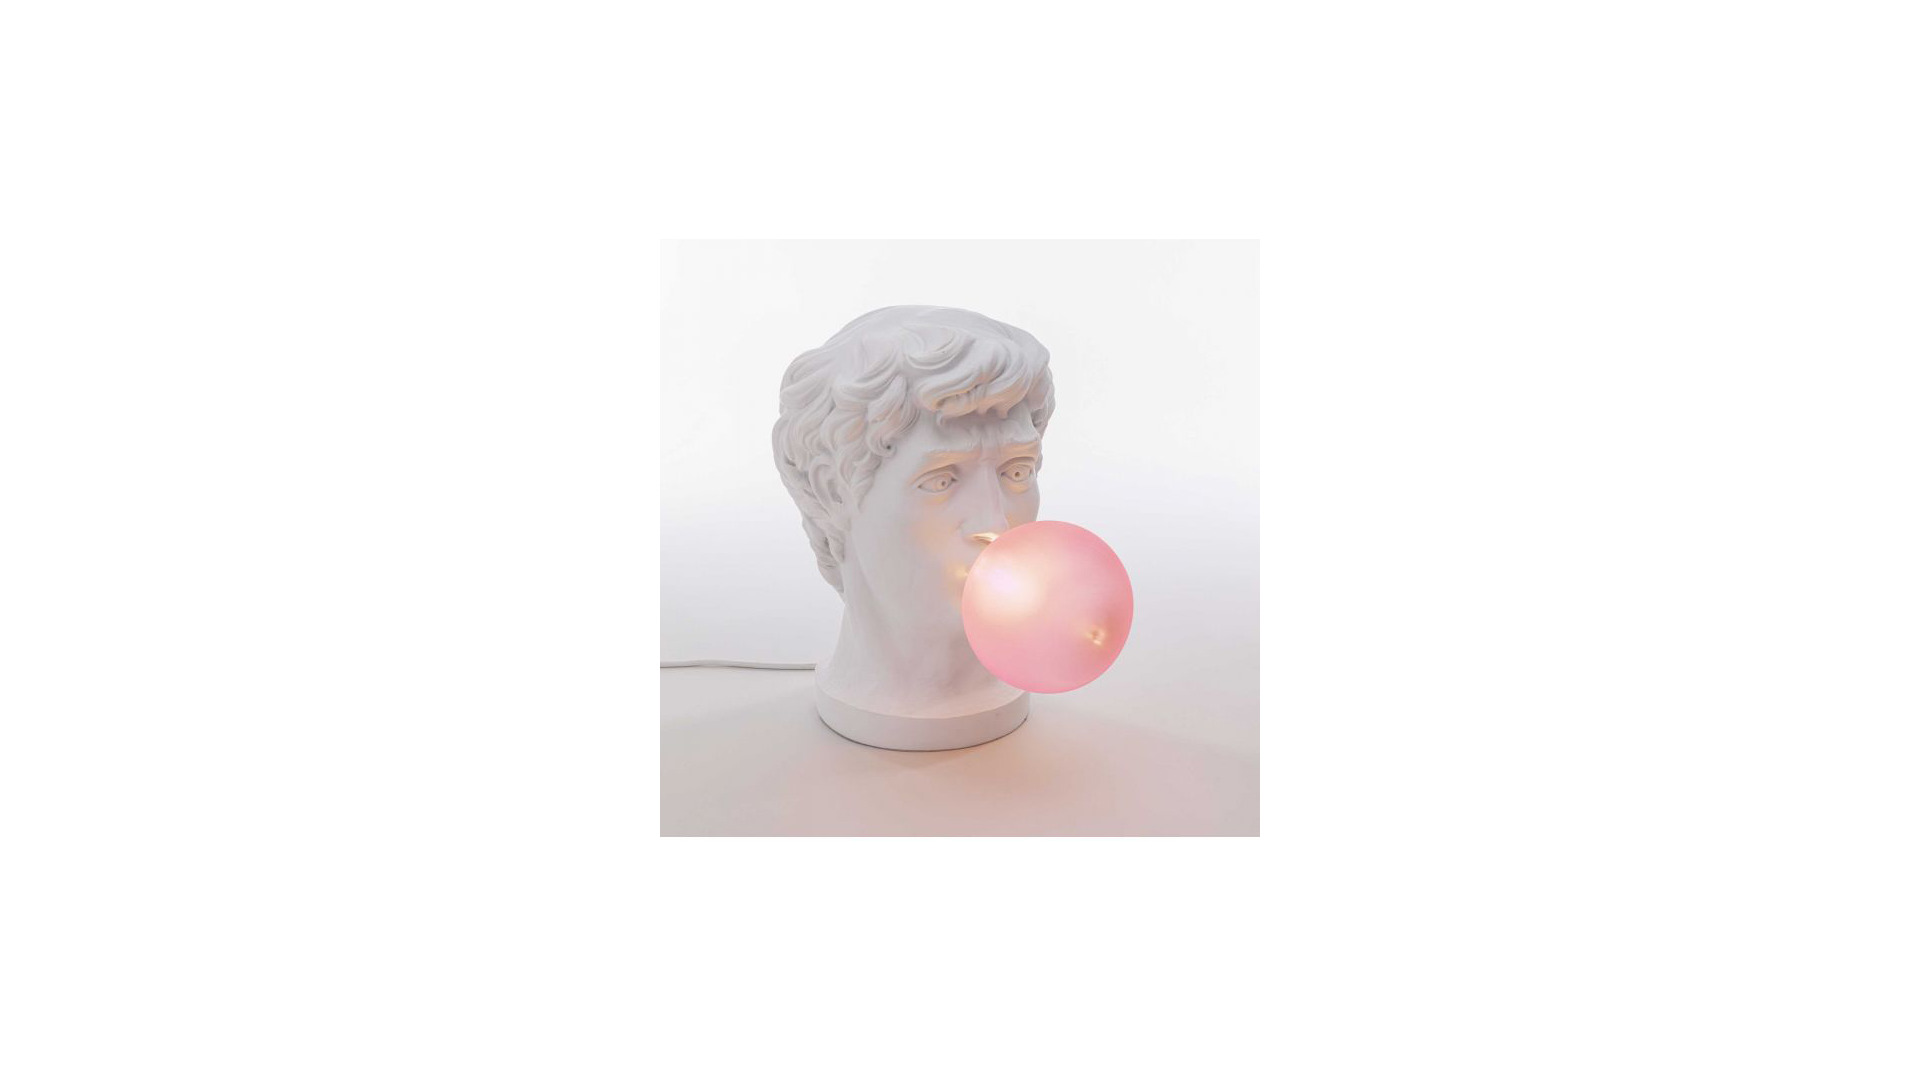 Настольная лампа Seletti Grace 21x12 см h40 см, смола, белая с розовым